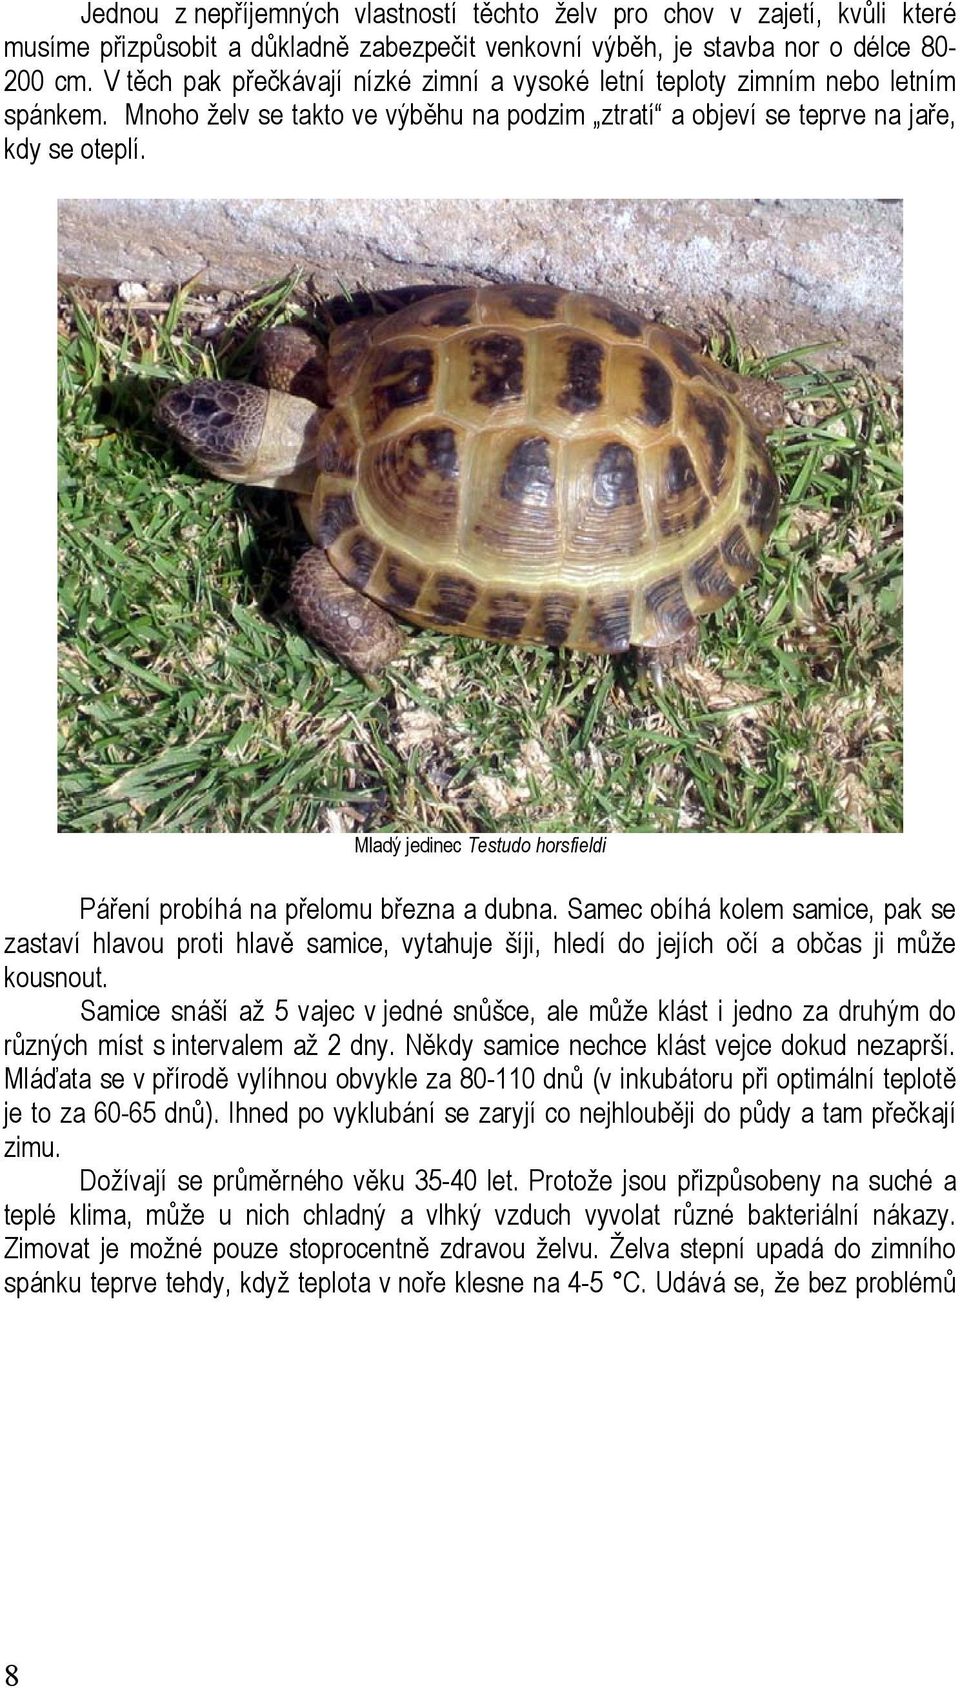 Evropské suchozemské želvy jejich chov a odchov - PDF Stažení zdarma